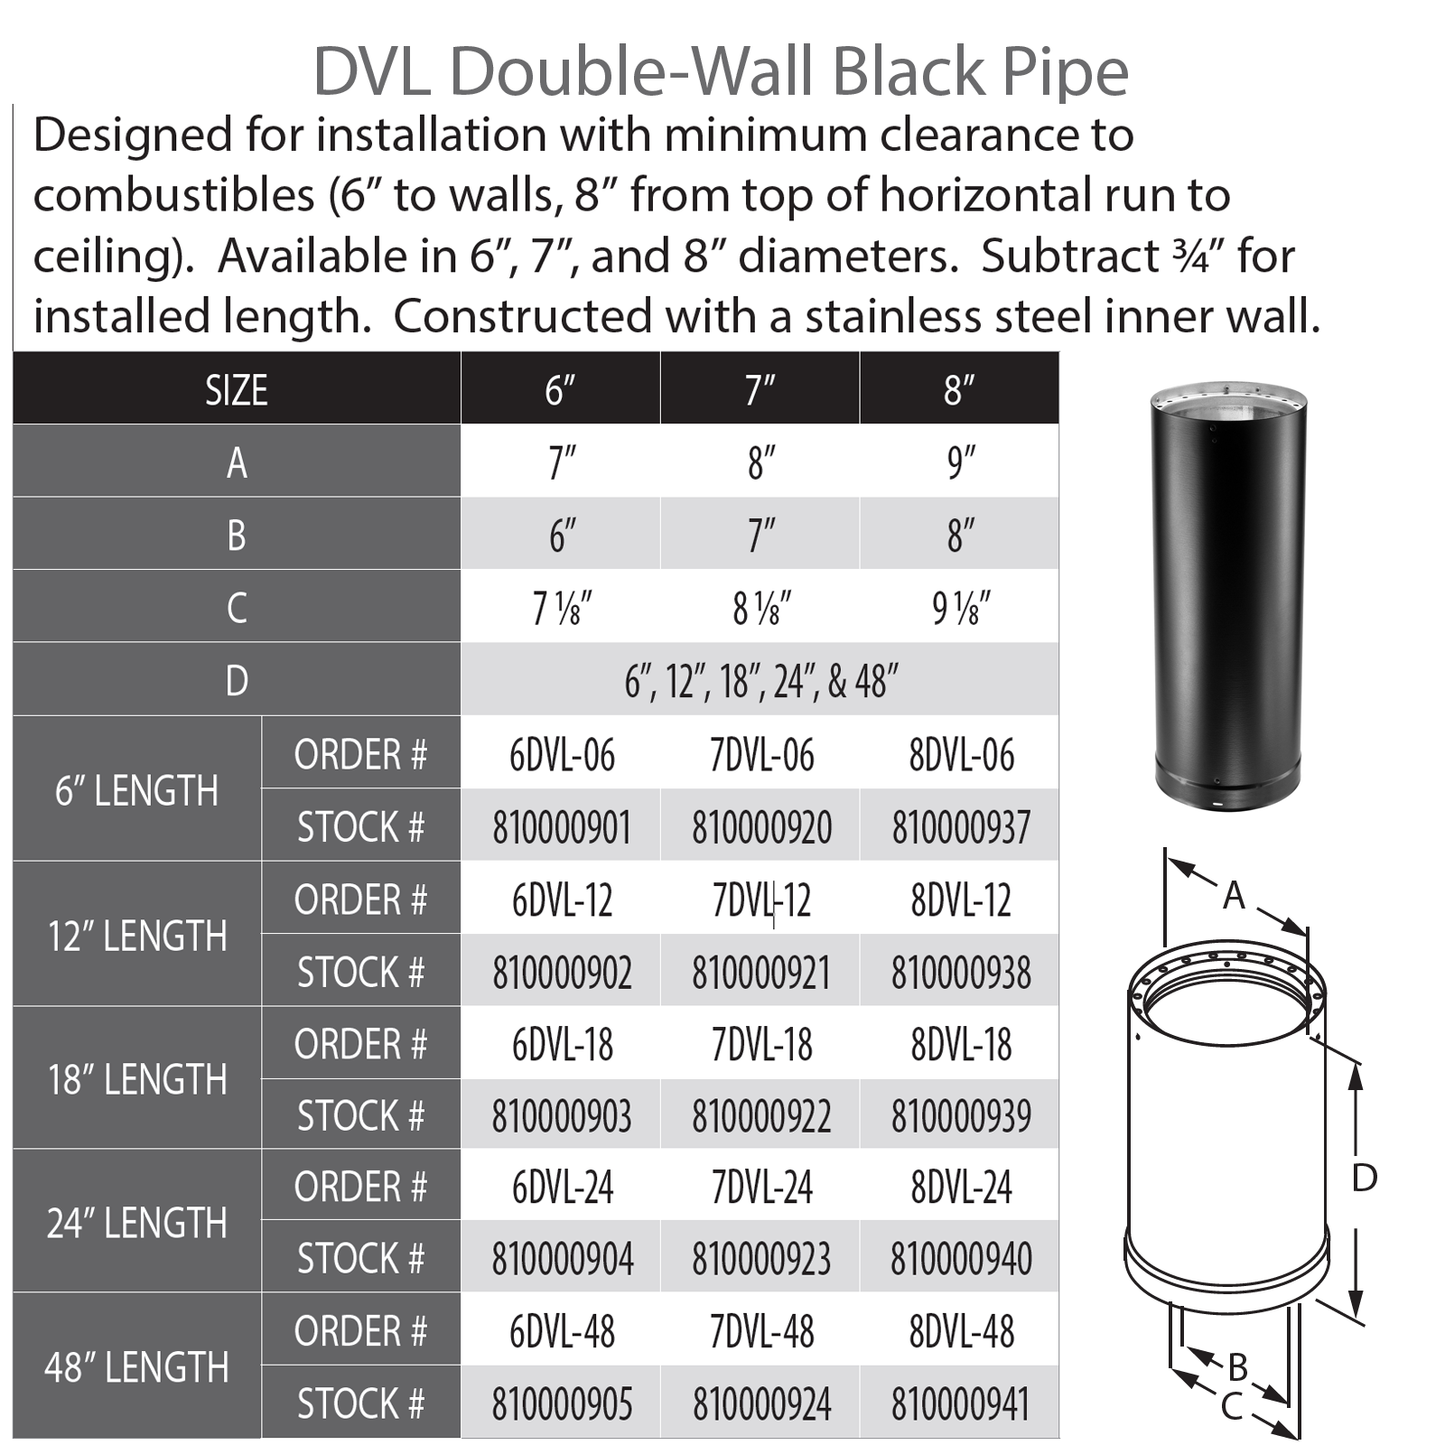 DuraVent DVL 7" Diameter Double Wall 18" Length | 7DVL-18